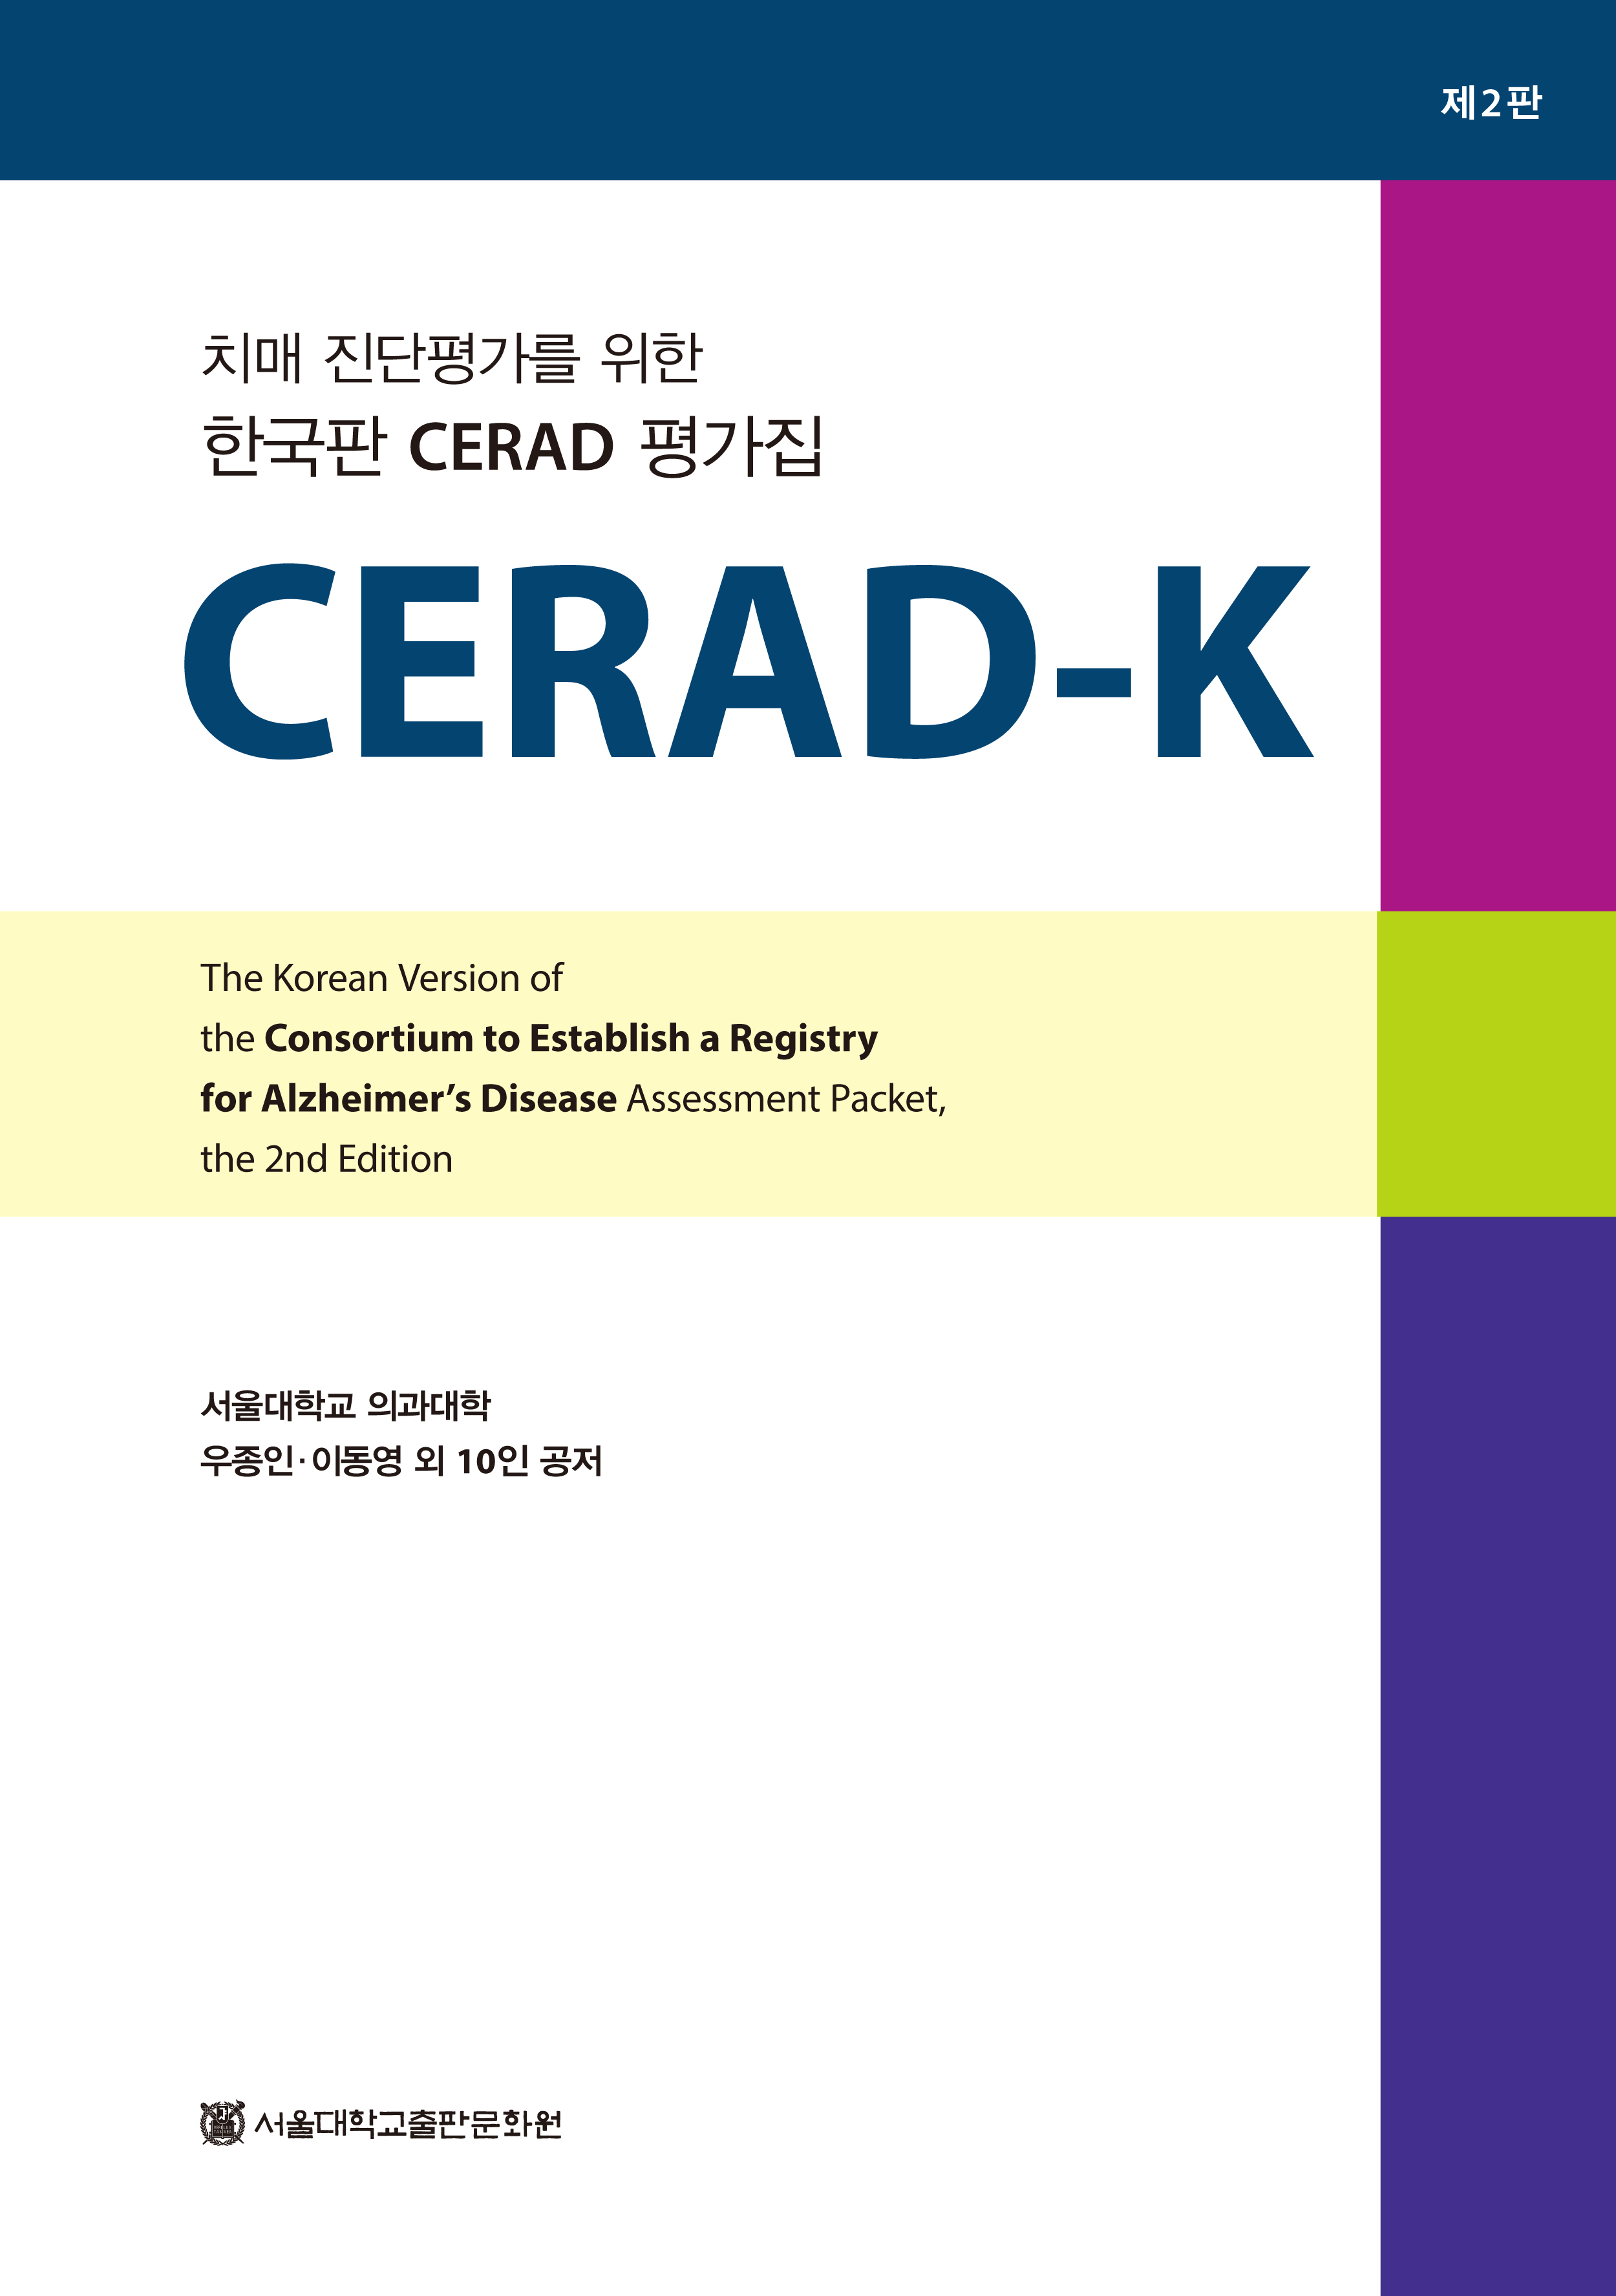 CERAD-K (제2판) 